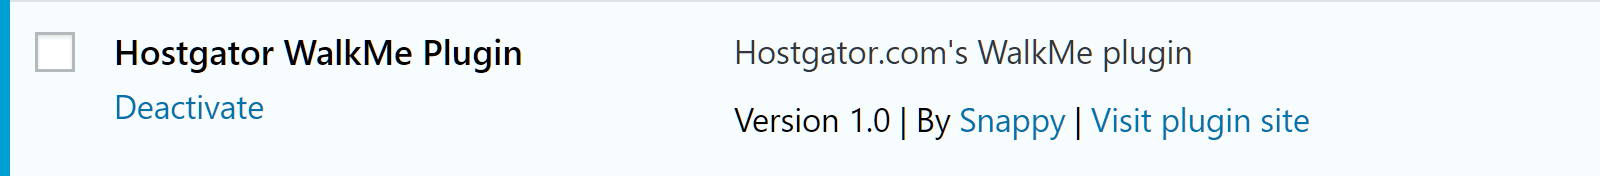 Новая установка HostGator WordPress также включает в себя бесплатный WP Super Cache, Google Analytics Dashboard для WP (GADWP) и плагины Varnish HTTP Purge по умолчанию